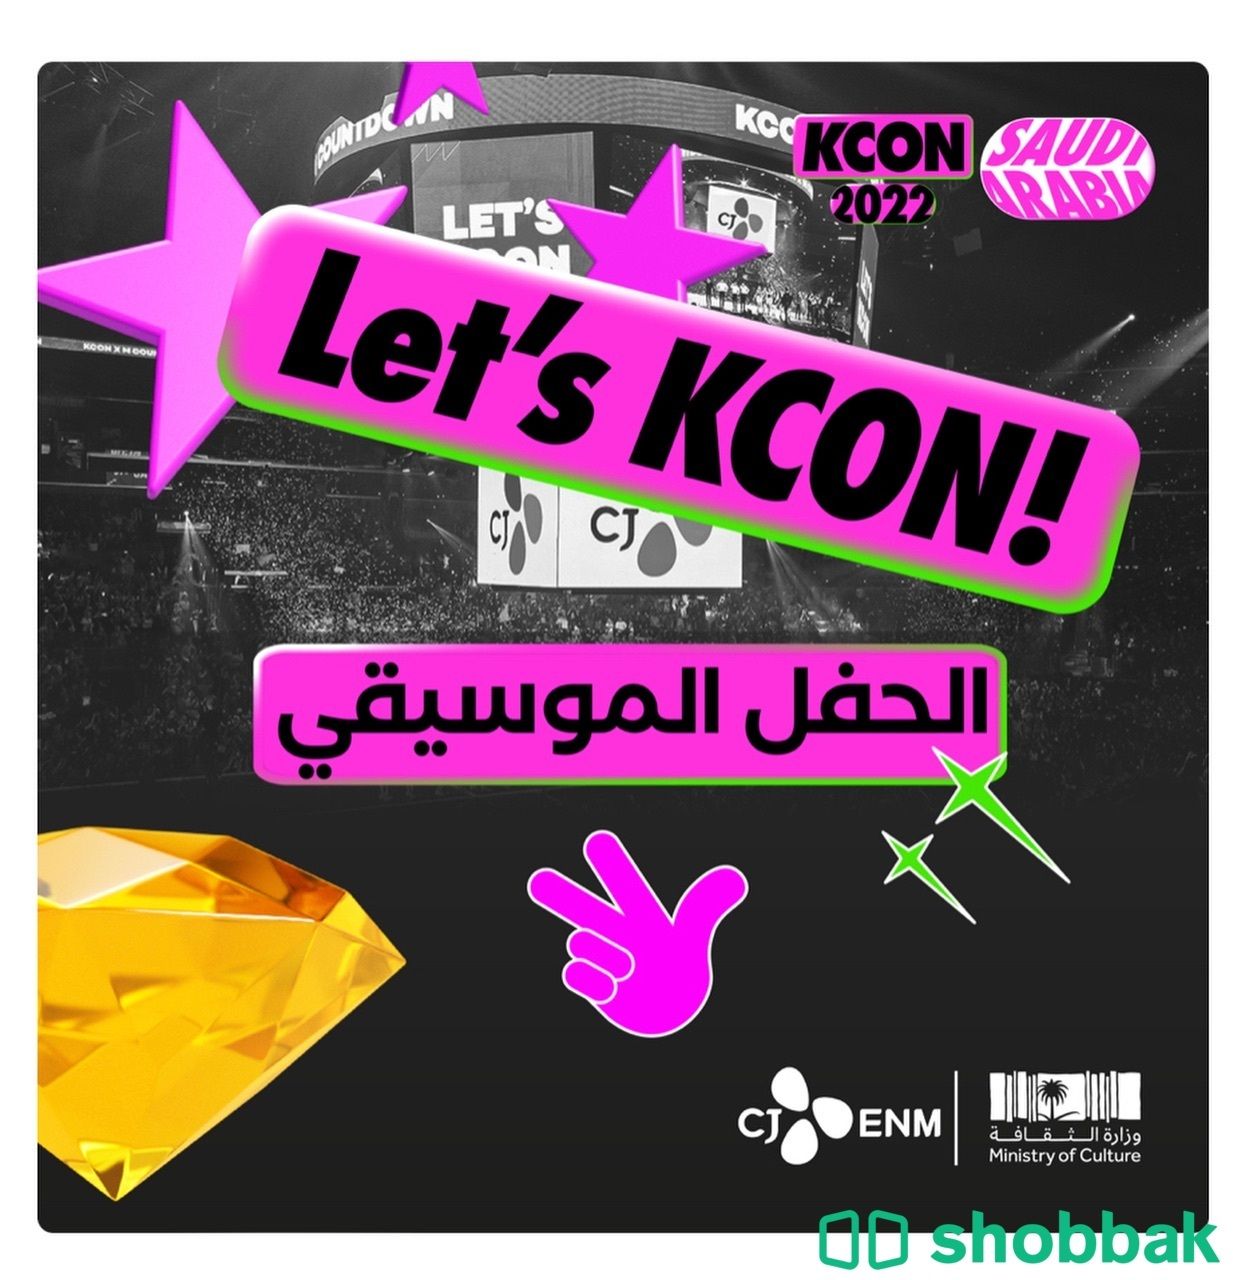 تذاكر حفل kcon يوم السبت Shobbak Saudi Arabia